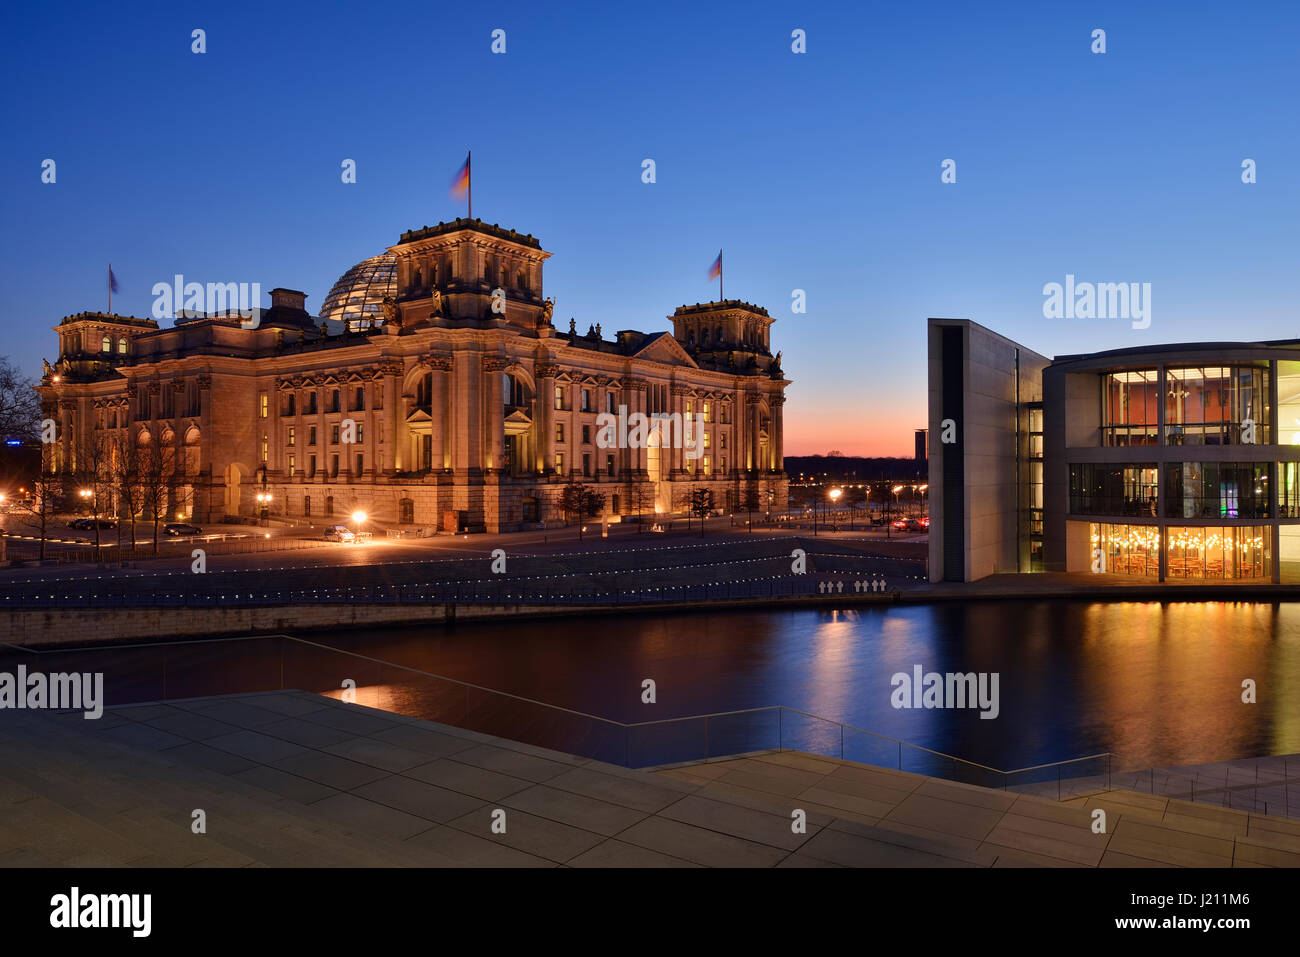 Regierungsgebäude beleuchtet der Reichstag und das Paul-Löbe-Haus im Regierungsviertel (Bundestag) in der Abenddämmerung, Berlin-Mitte Spree entlang. Reichst Stockfoto